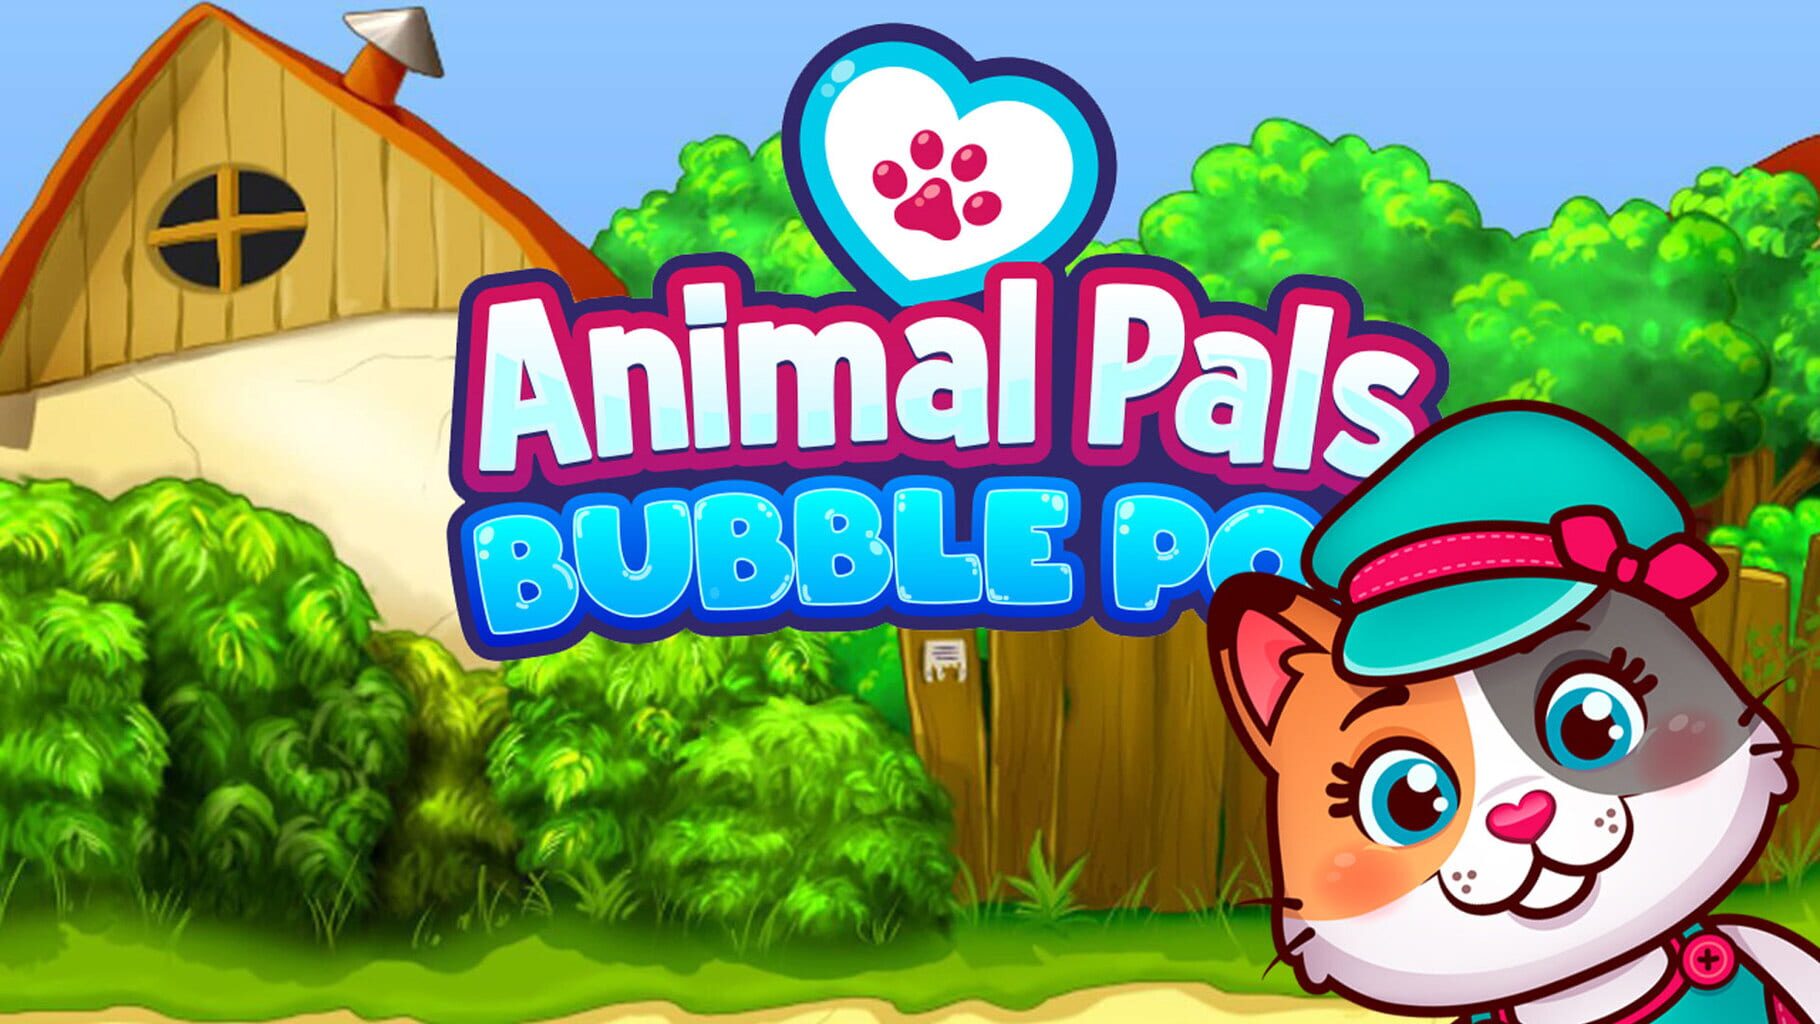 Animal Pals Bubble Pop artwork